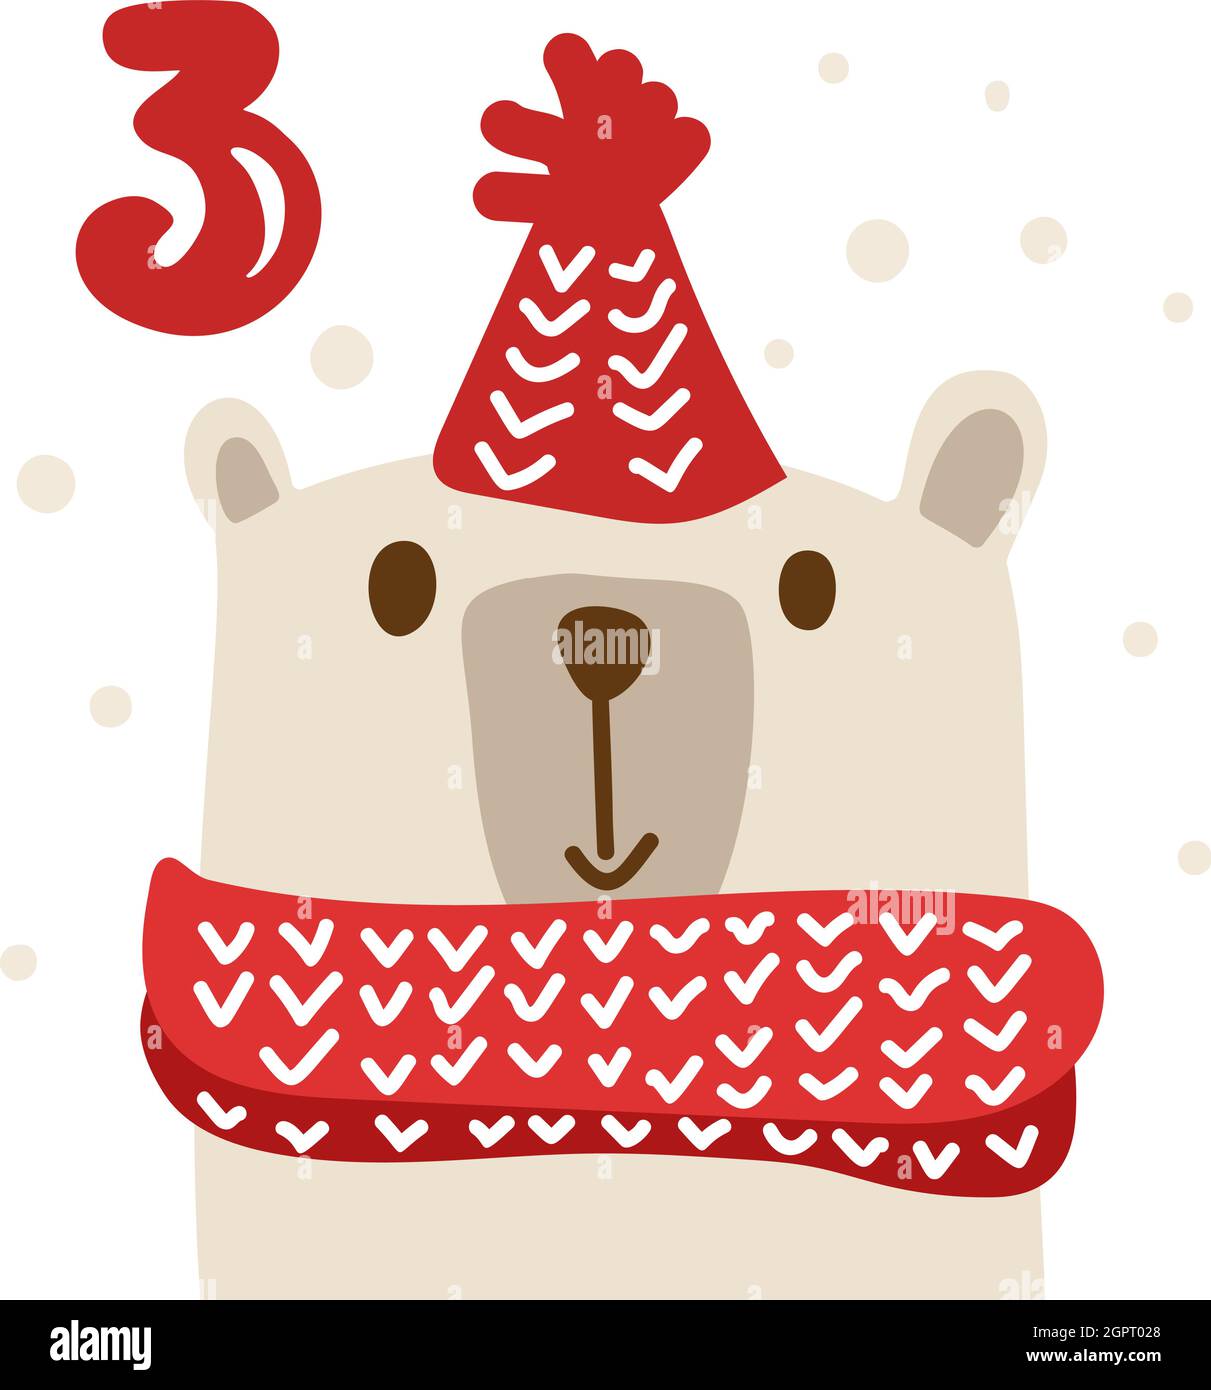 Winter Vektor Illustration des nordischen glücklichen Bären. Weihnachten Adventskalender fünfundzwanzig Tage vor dem Feiertag Weihnachten, drei Tage. Nette skandinavische Hand Stock Vektor